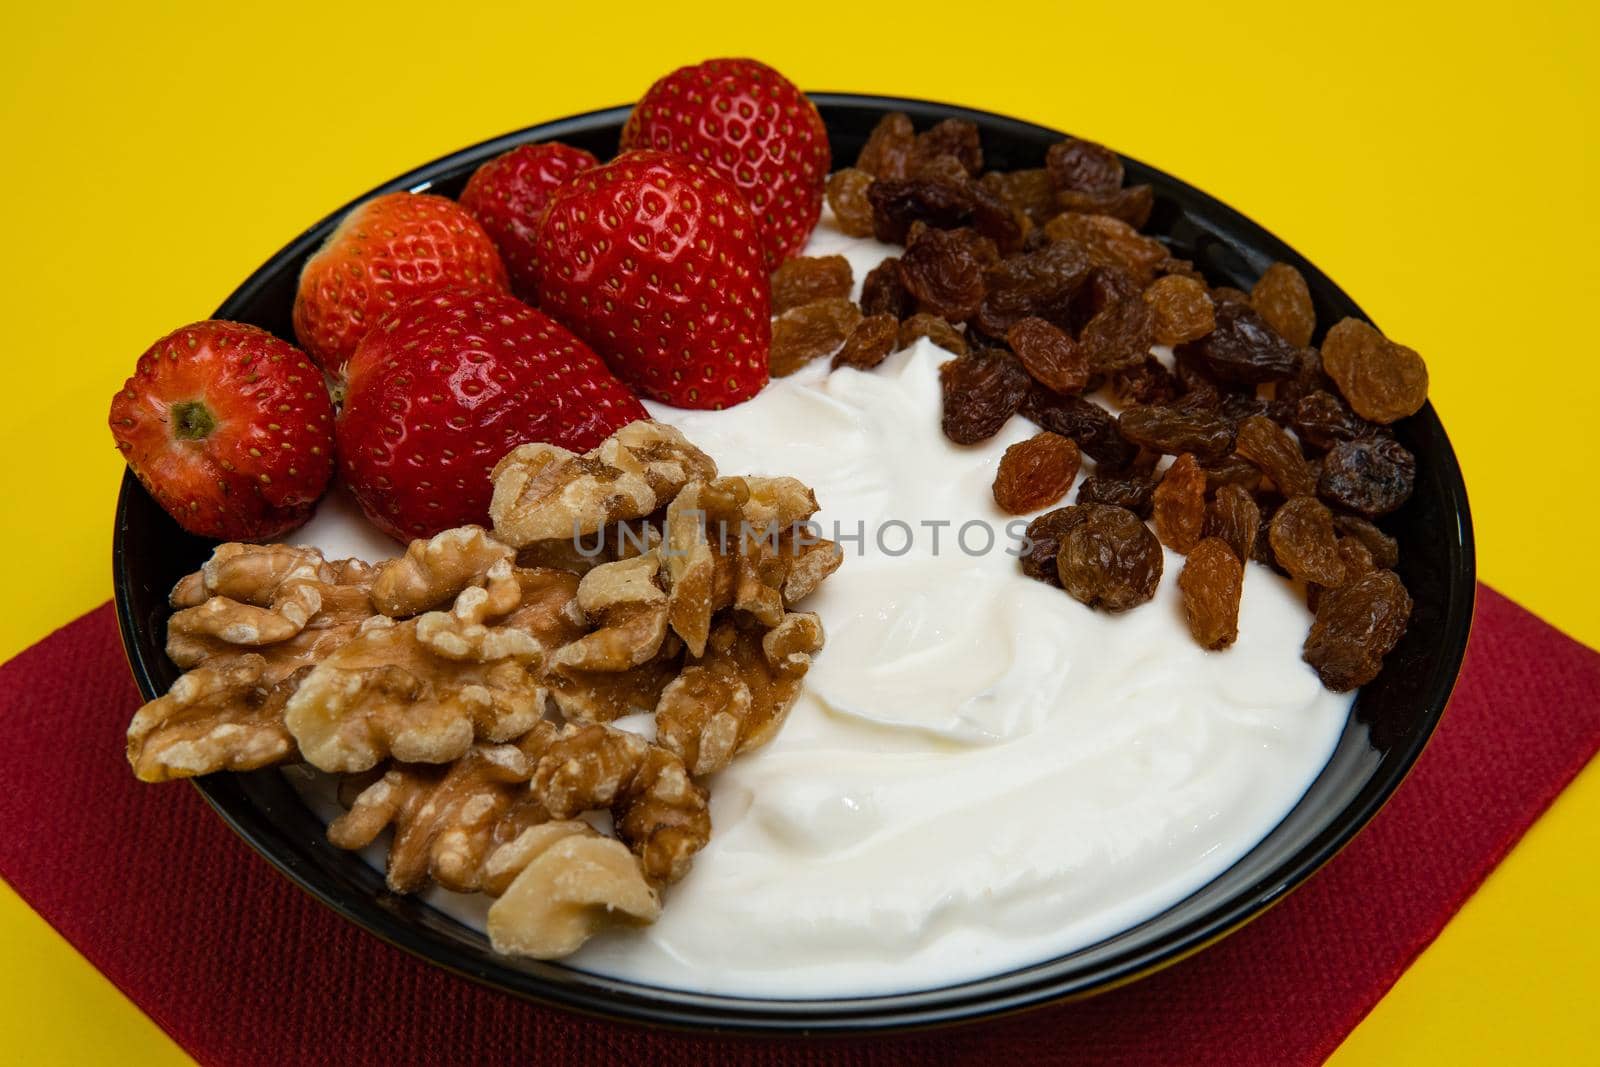 Plain yogurt with strawberries, red napkin, raisins, walnuts and yellow background by xavier_photo